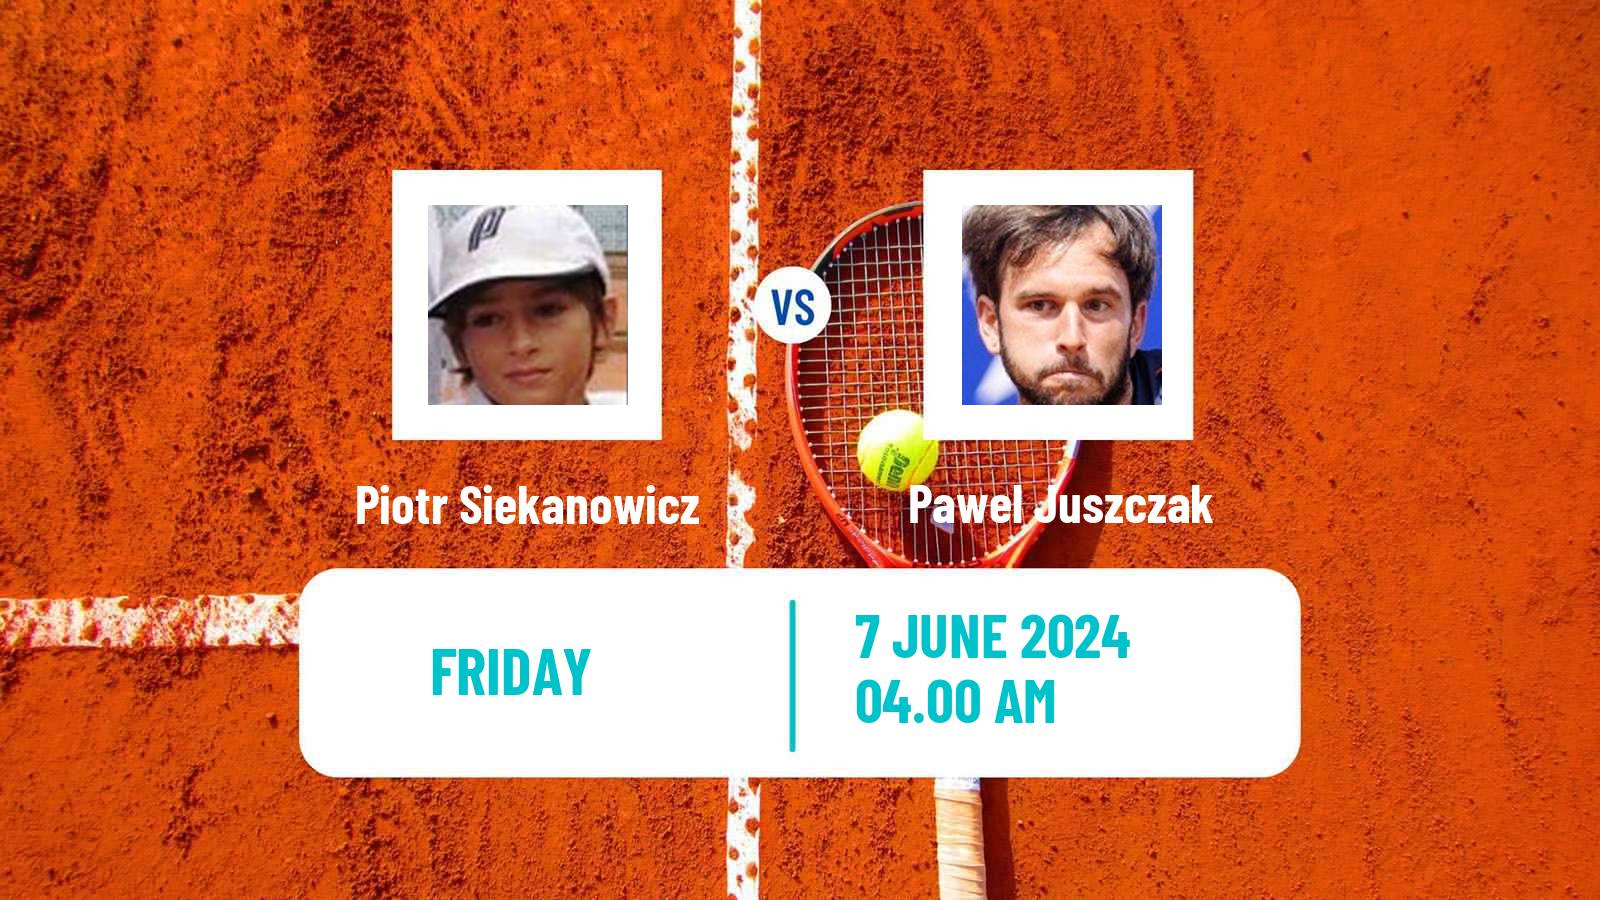 Tennis ITF M15 Grodzisk Mazowiecki Men Piotr Siekanowicz - Pawel Juszczak